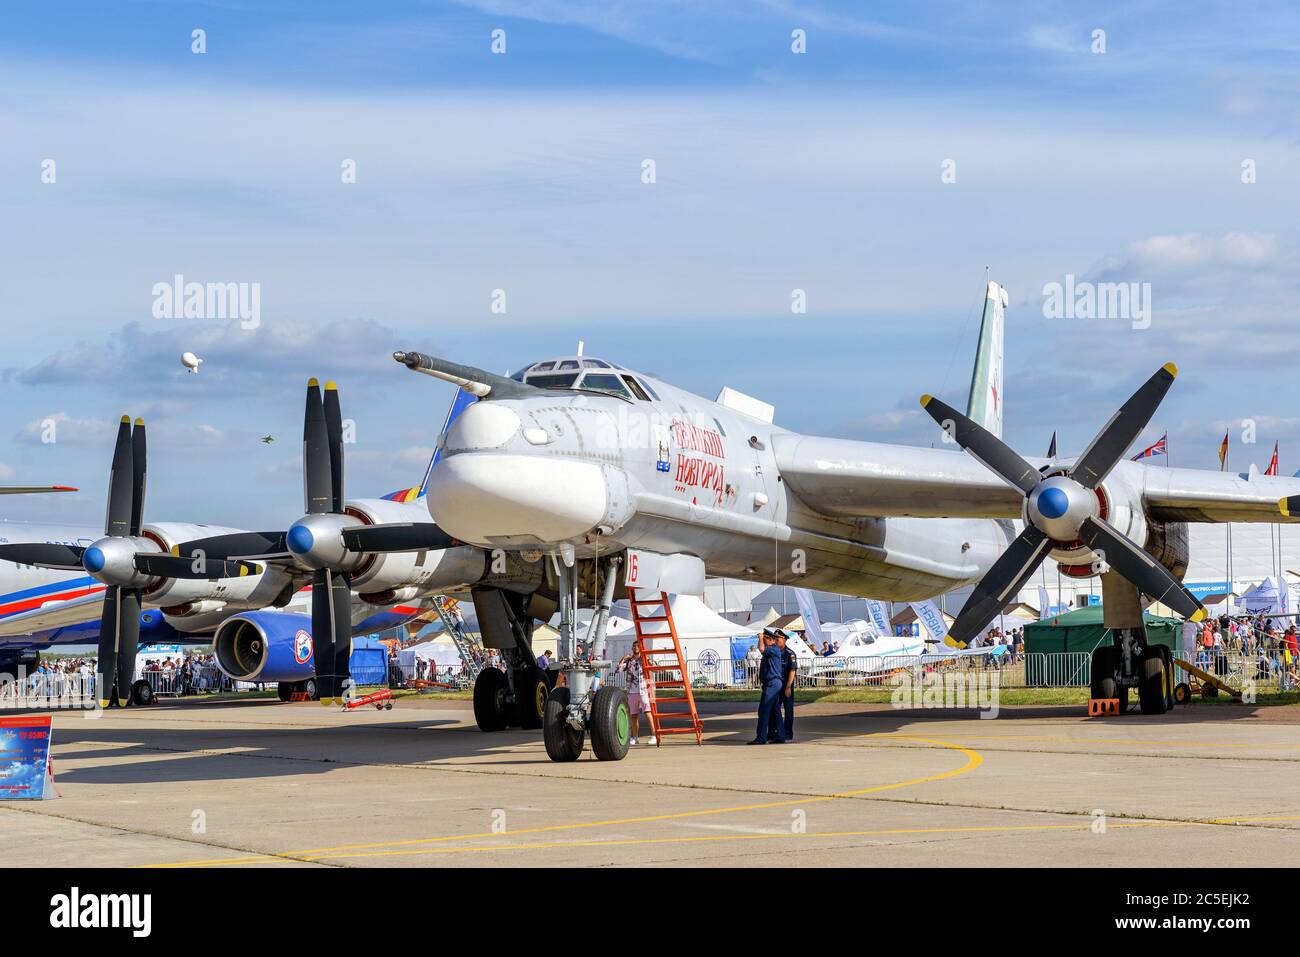 REGIÓN DE MOSCÚ - 28 DE AGOSTO de 2015: El bombardero estratégico ruso Tupolev tu-95MS 'Bear' en el Salón Internacional de Aviación y espacio (MAKS) en Zhukovsky. Foto de stock